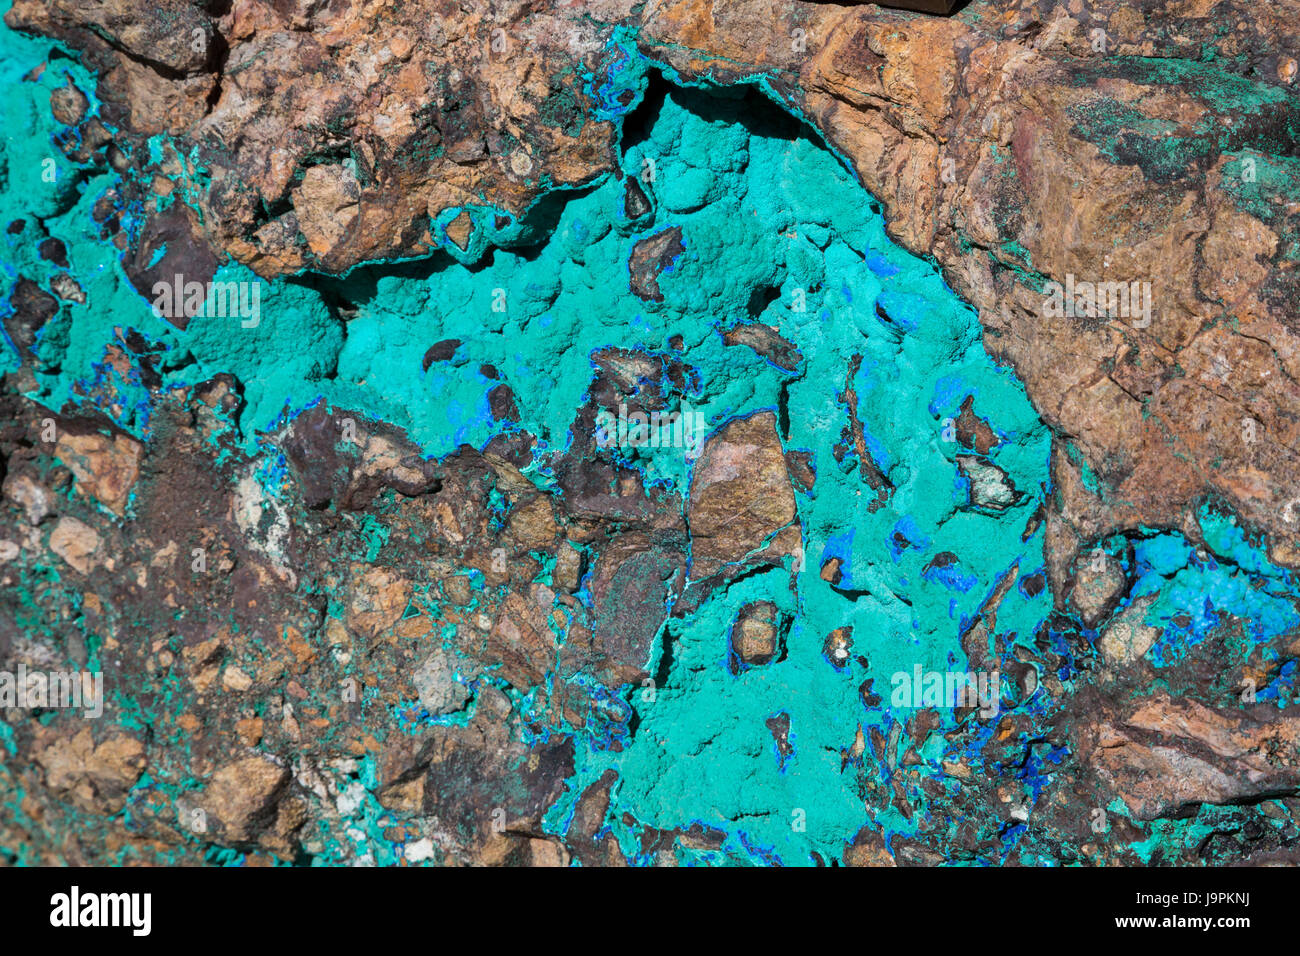 Oracle, Arizona - ein Stein Malachit (grün) und Mineralien Azurit (blau) auf dem Display außerhalb von Biosphäre 2 anzeigen. Beide sind Kupfer-Carbonat Mineralien. Stockfoto